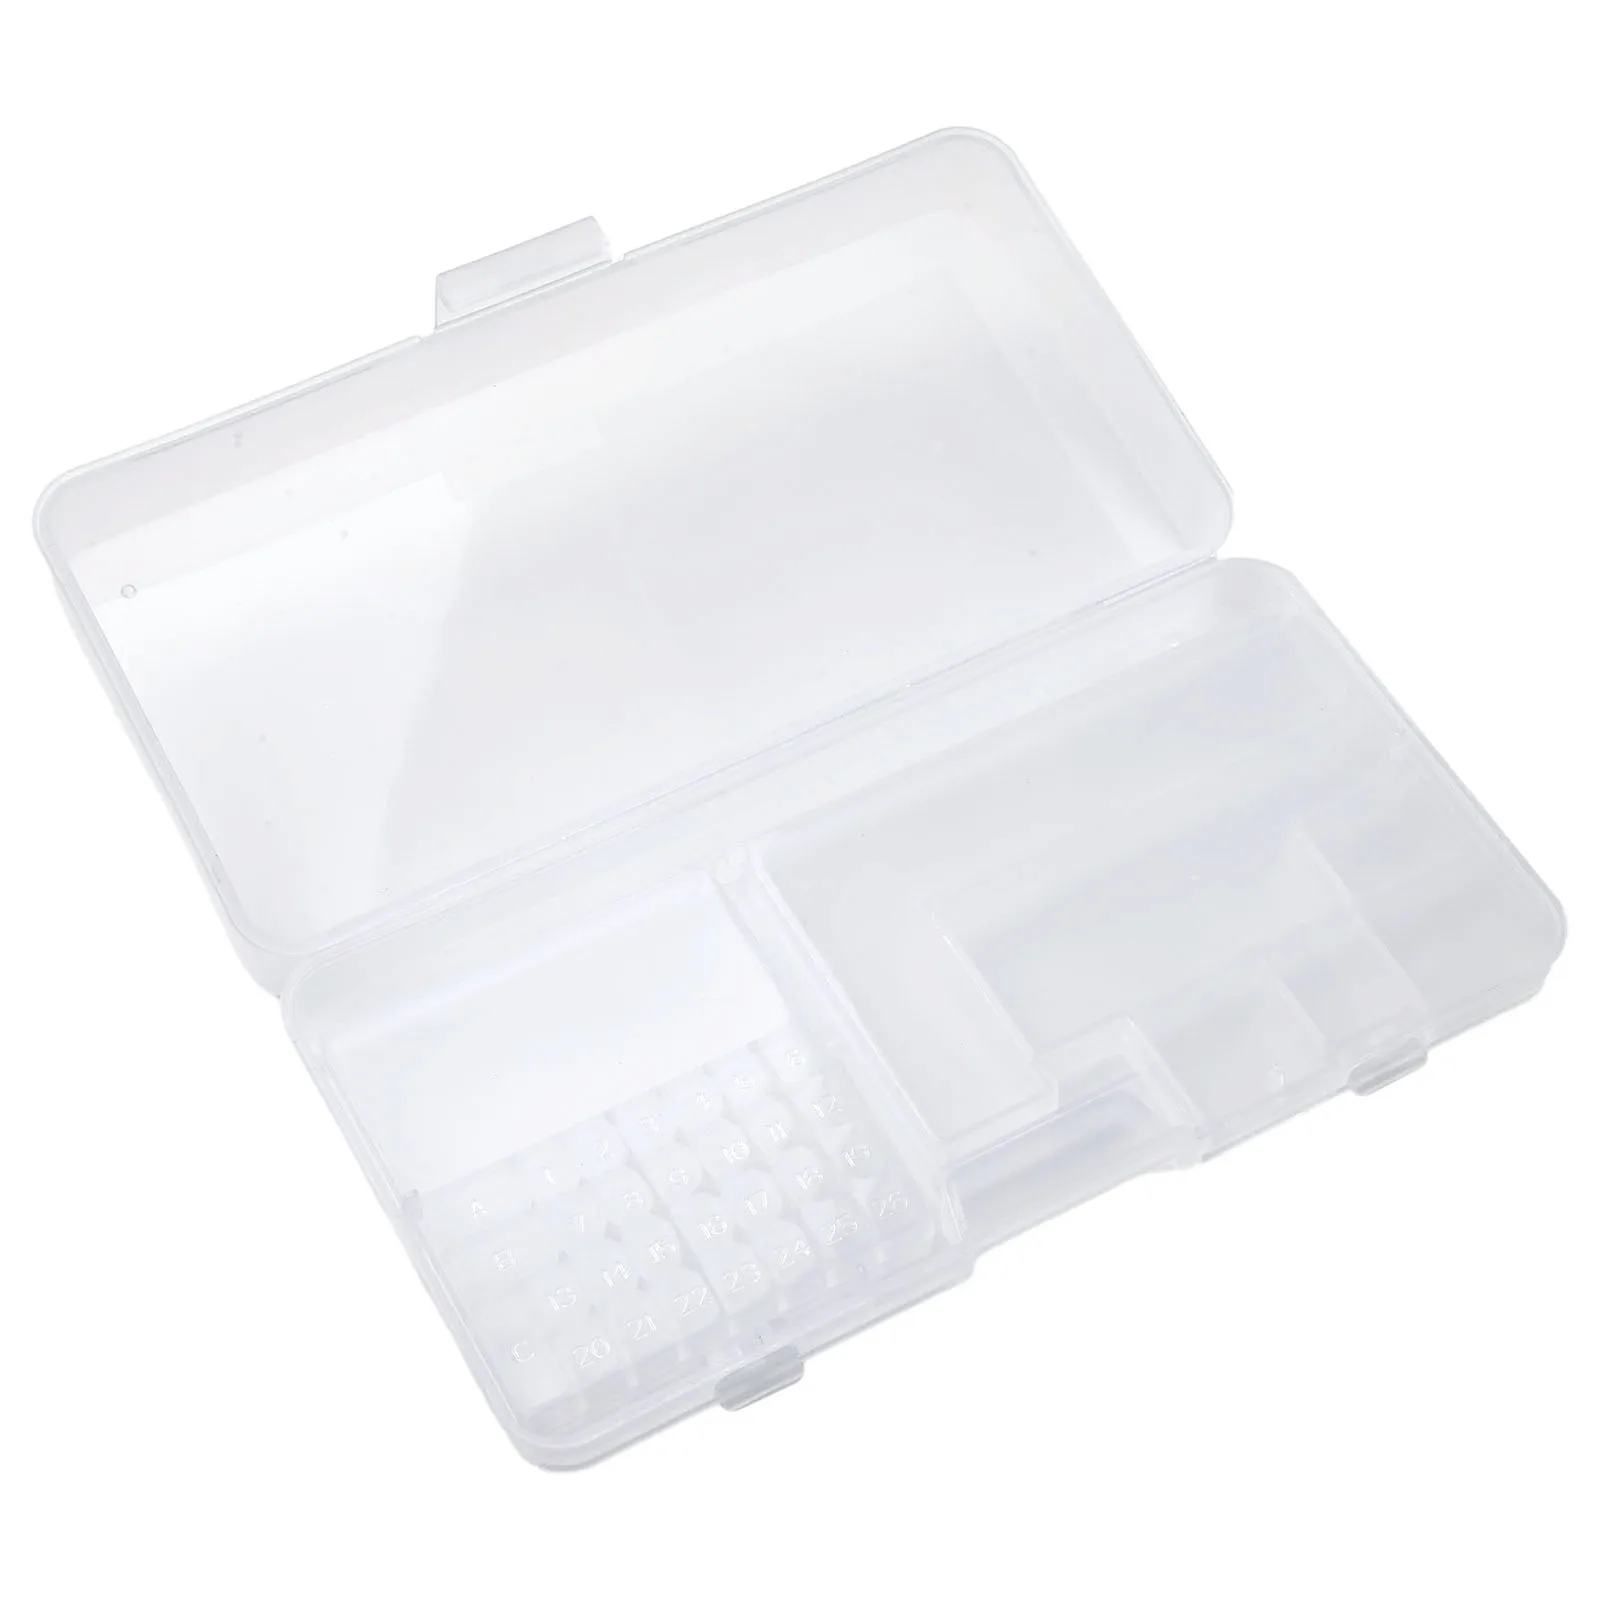 

Пластиковый ящик для хранения с отверстиями, прозрачный ящик для инструментов, прямоугольный Органайзер из ПВХ для электронных компонентов, контейнер